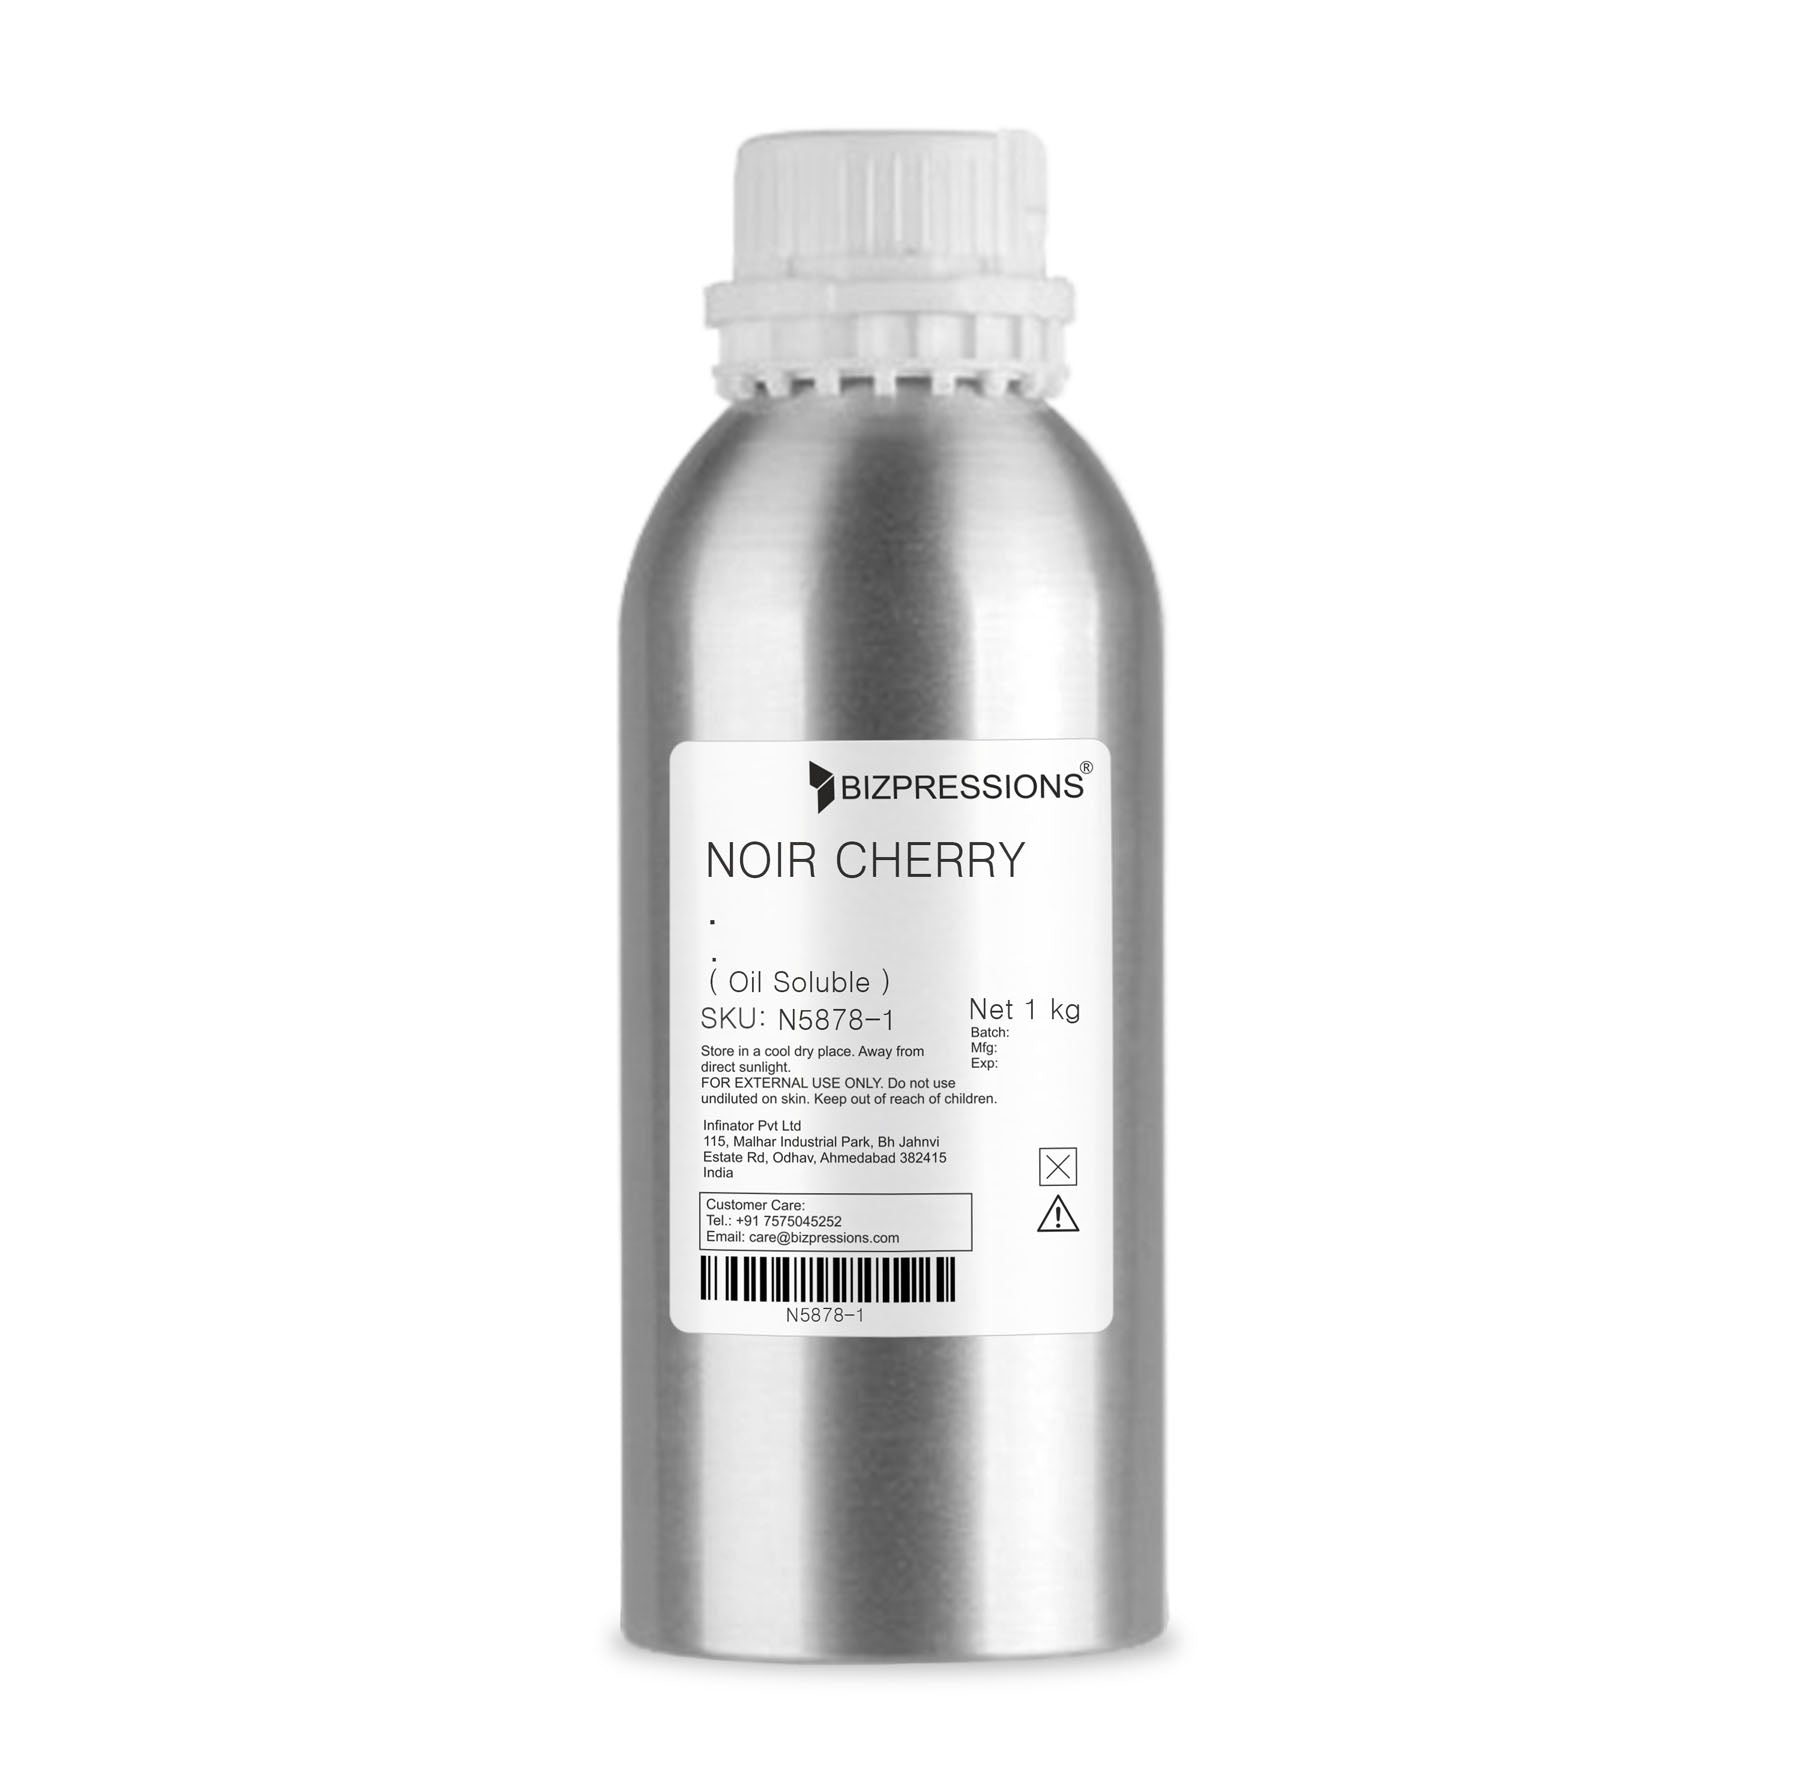 NOIR CHERRY - Fragrance ( Oil Soluble ) - 1 kg